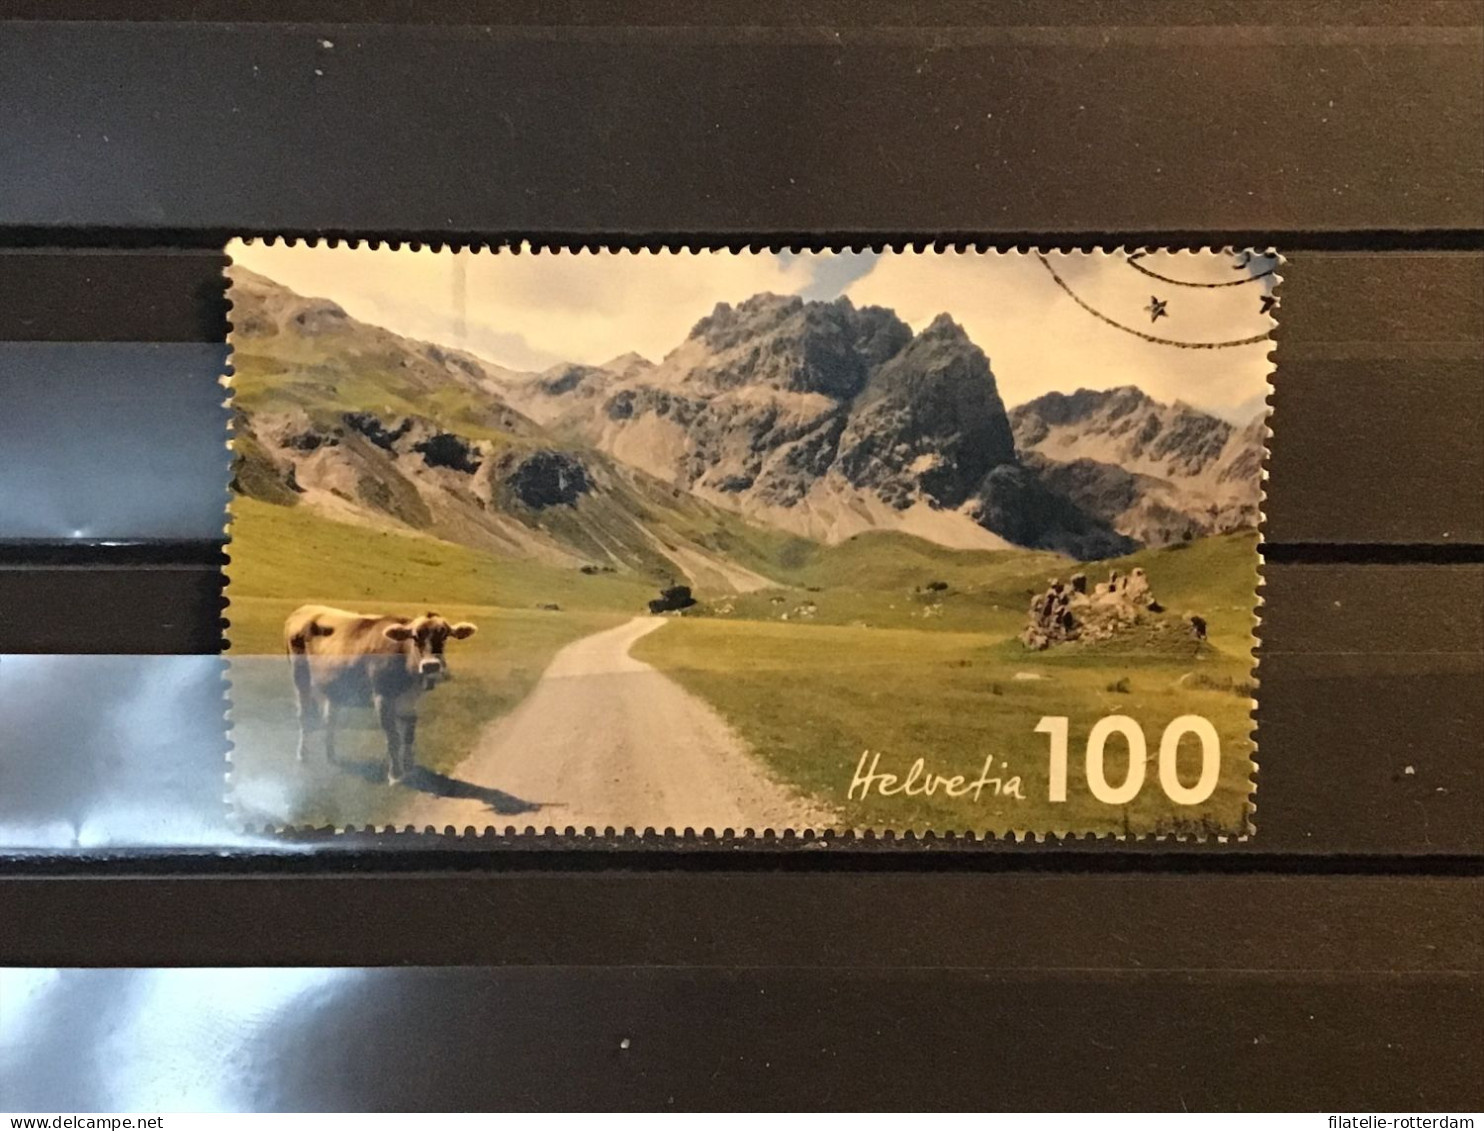 Switzerland / Zwitserland - Mountains (100) 2019 - Usati